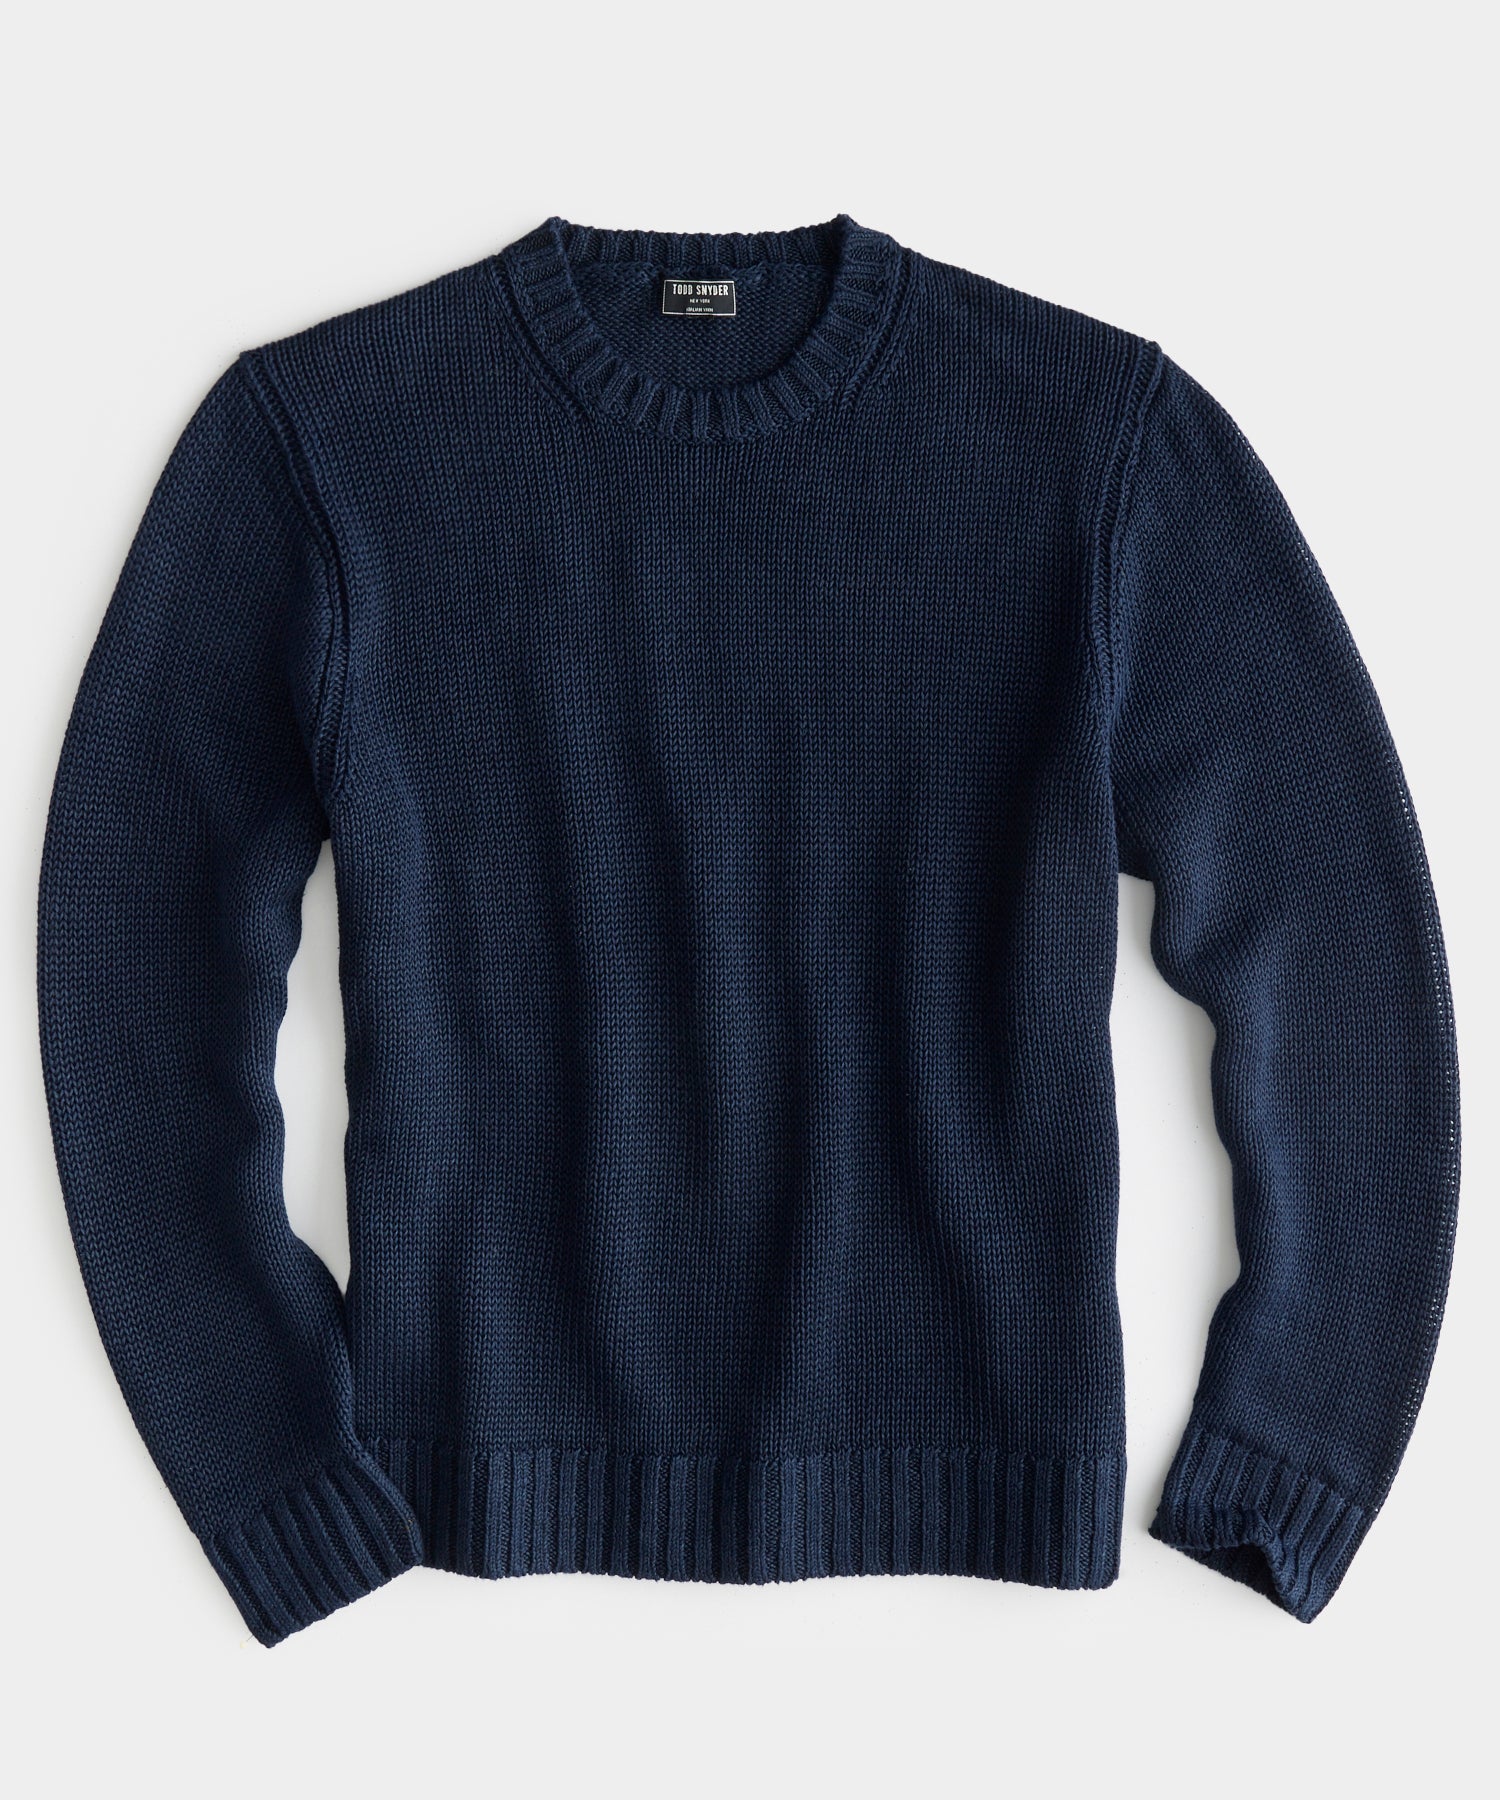 Italian Linen Crewneck Sweater in Navy